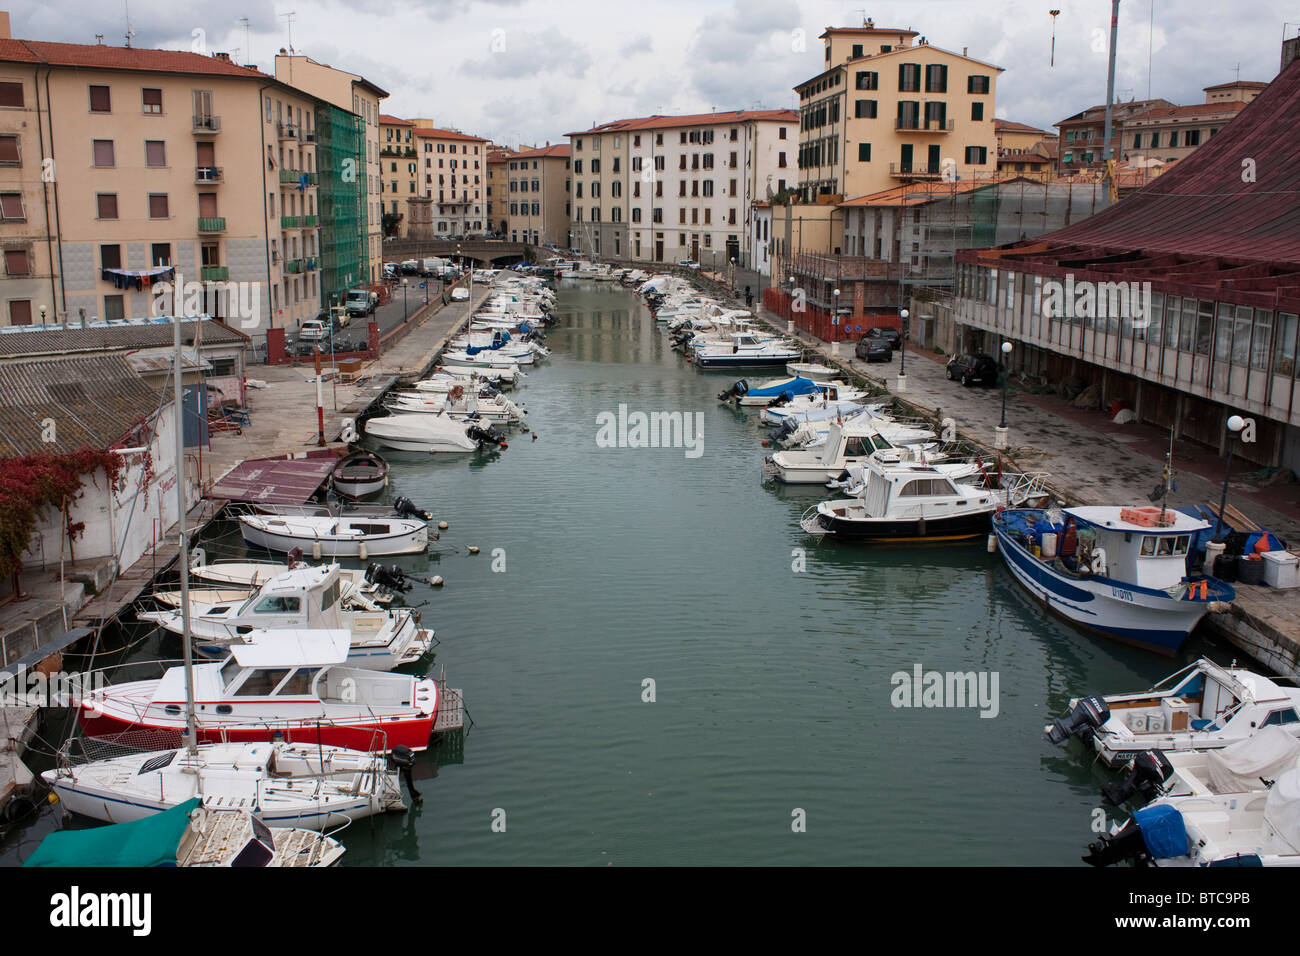 Livorno Livorno in Englisch, traditionell genannt ist eine Hafenstadt am Ligurischen Meer am westlichen Rand der Toskana, Italien. Stockfoto